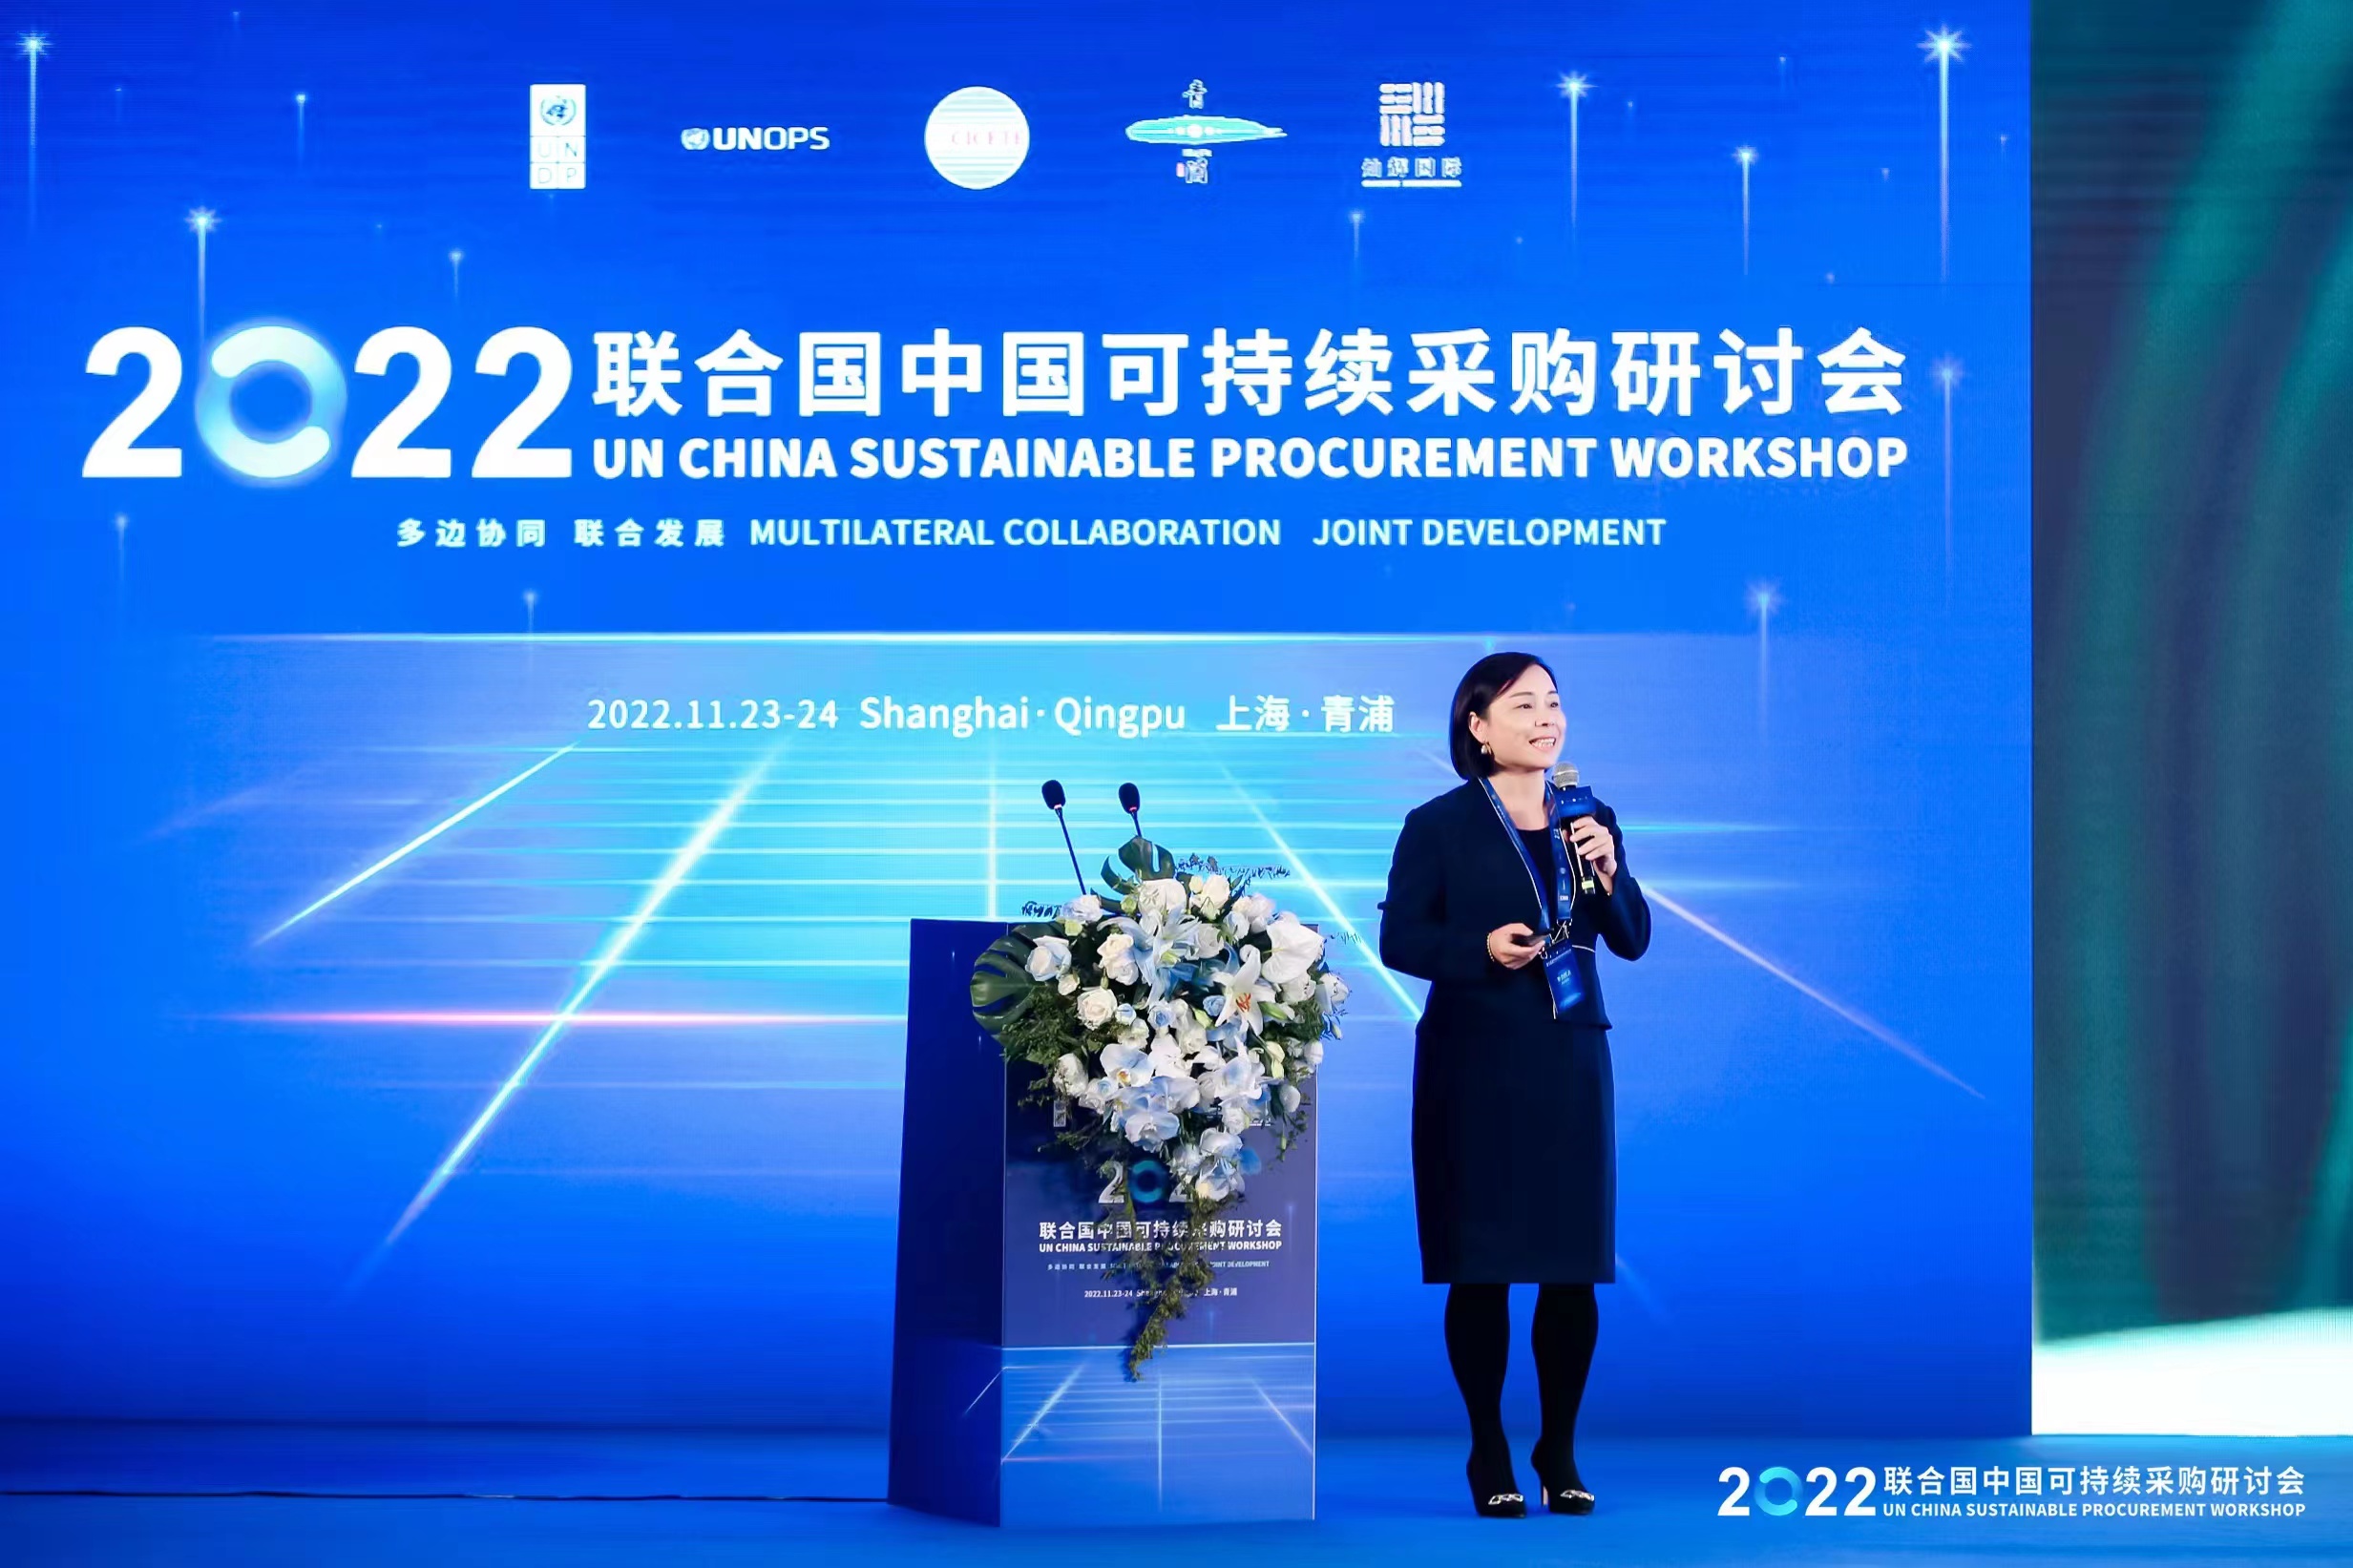 必维受邀出席2022联合国中国可持续采购研讨会，就如何实现ESG投资做深入分享